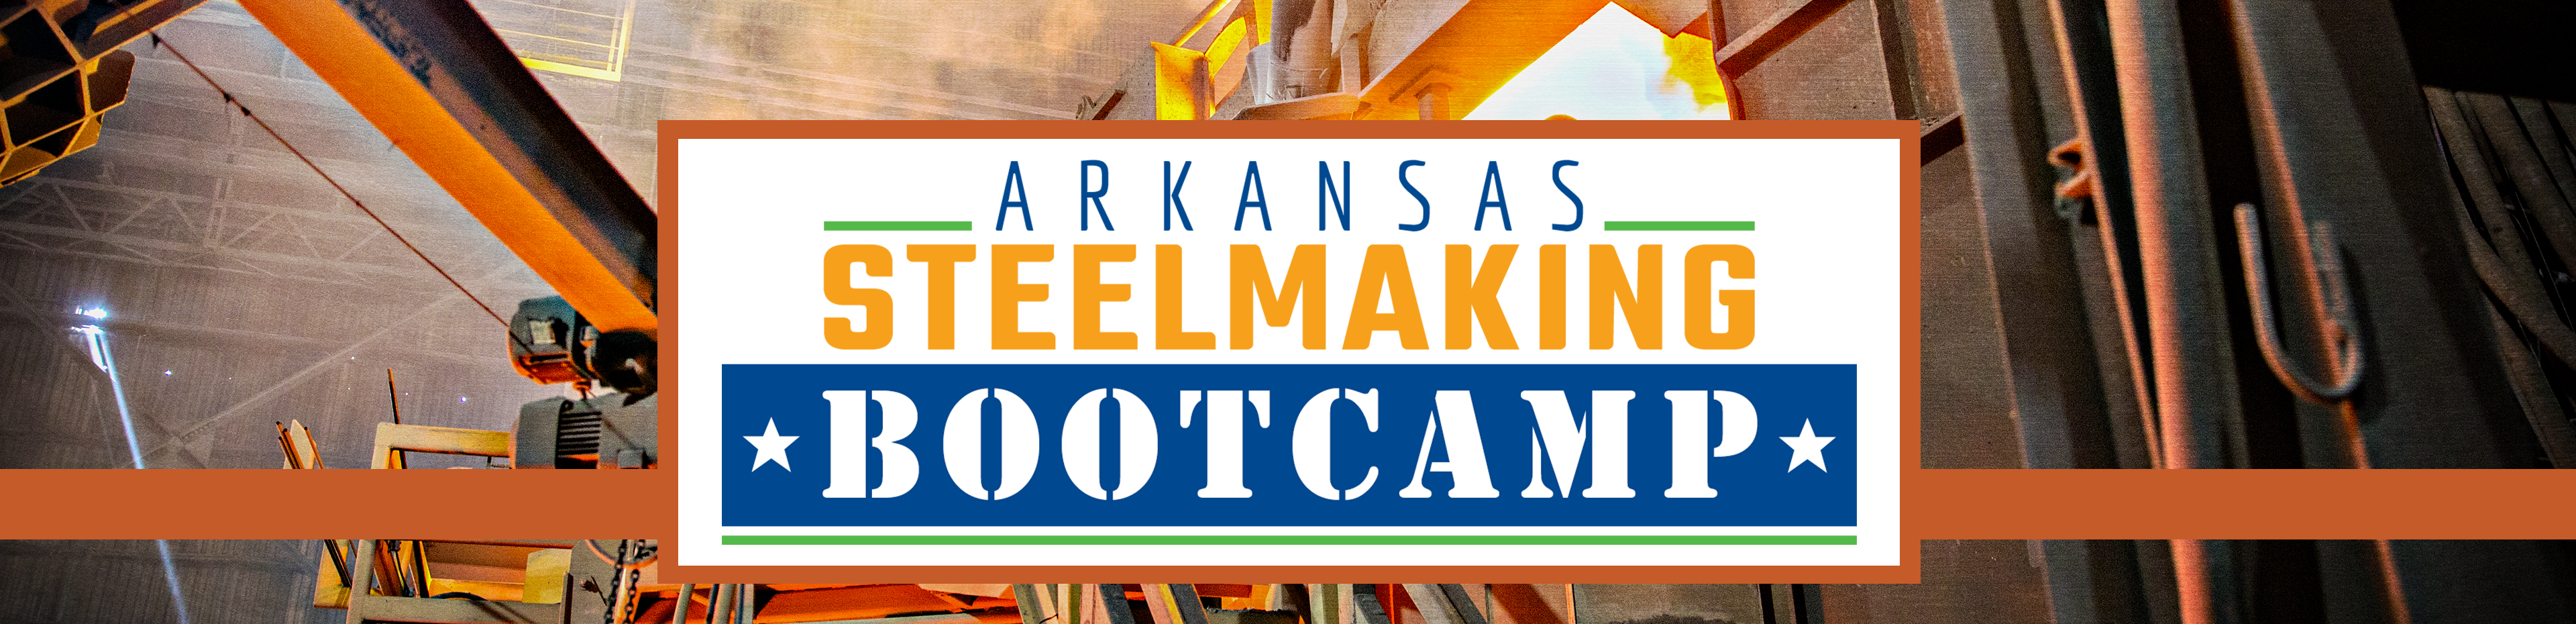 Arkansas Steelmaking Academy Header